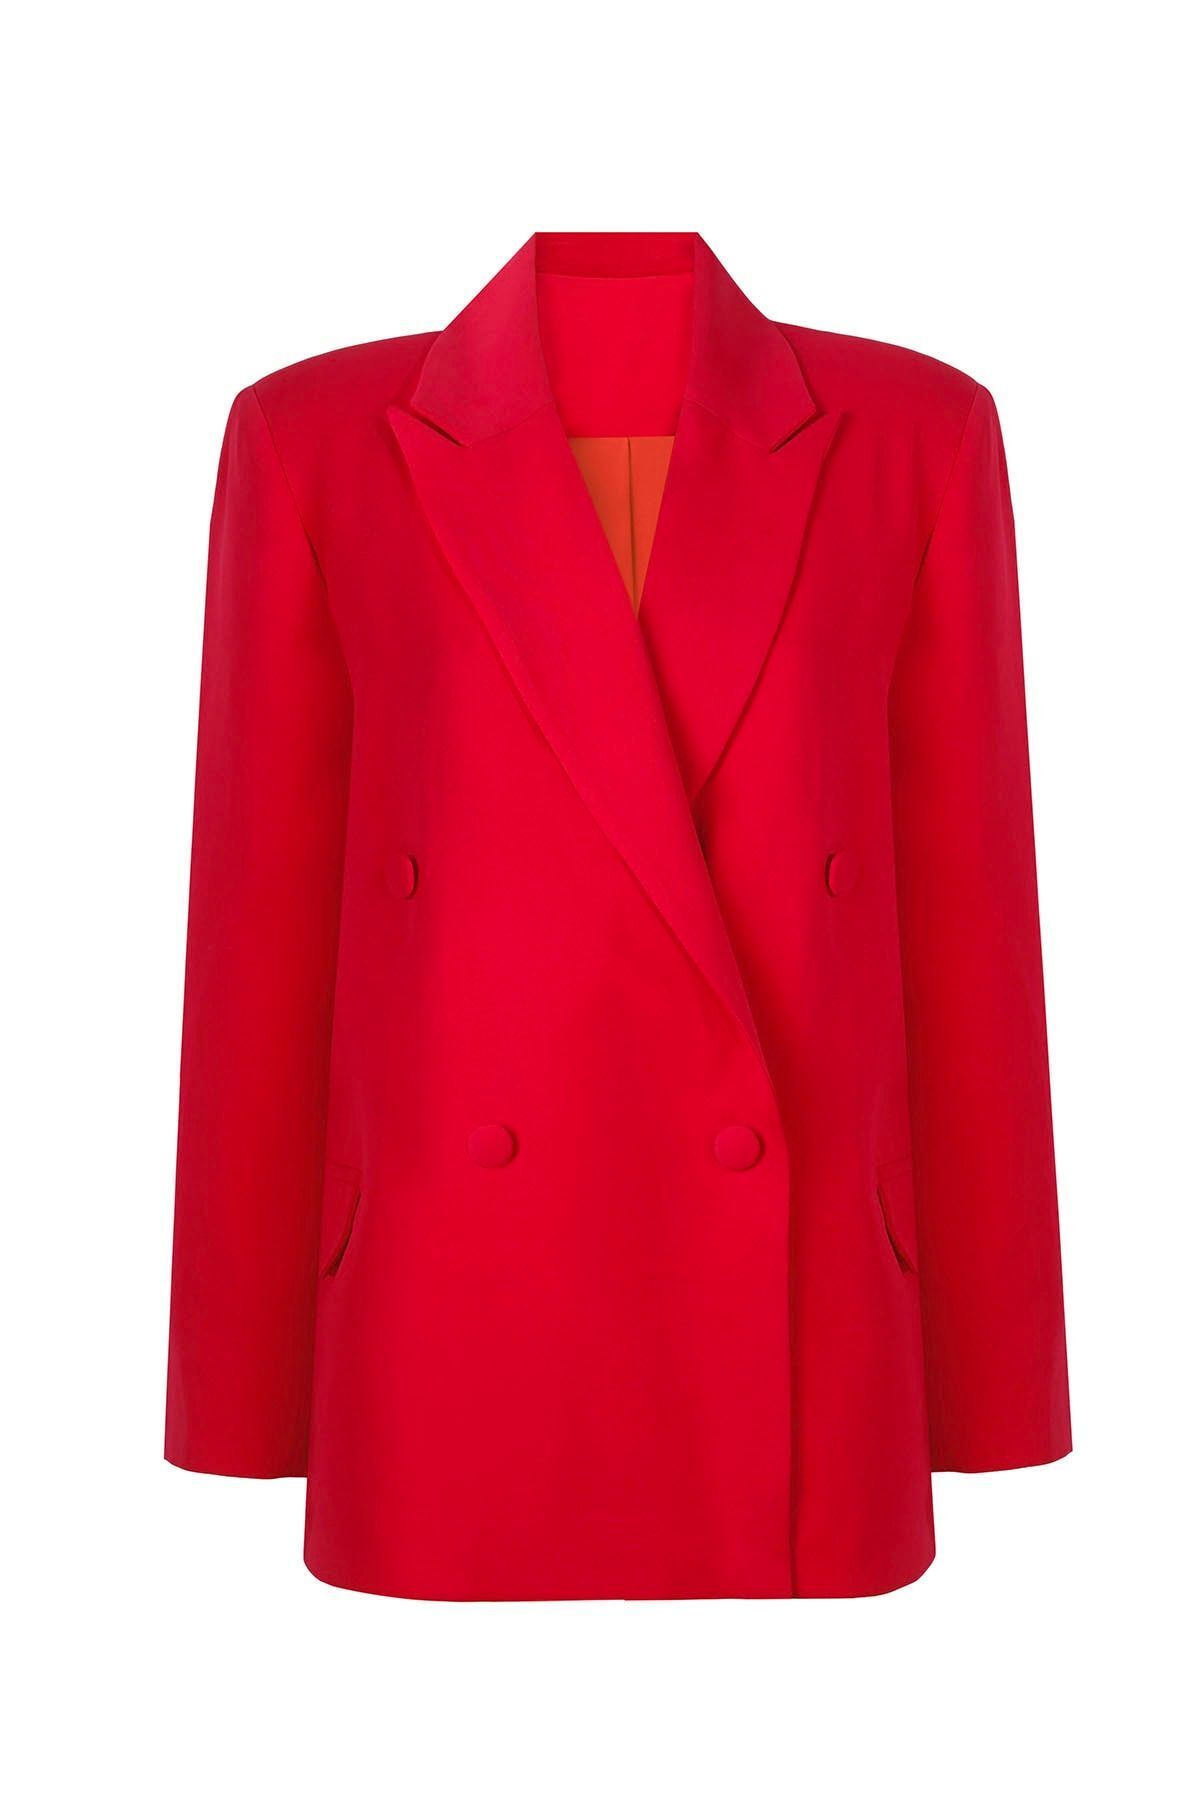 Whenever Company Kırmızı Oversize Vatkalı Içi Astarlı Krep Premium Ceket